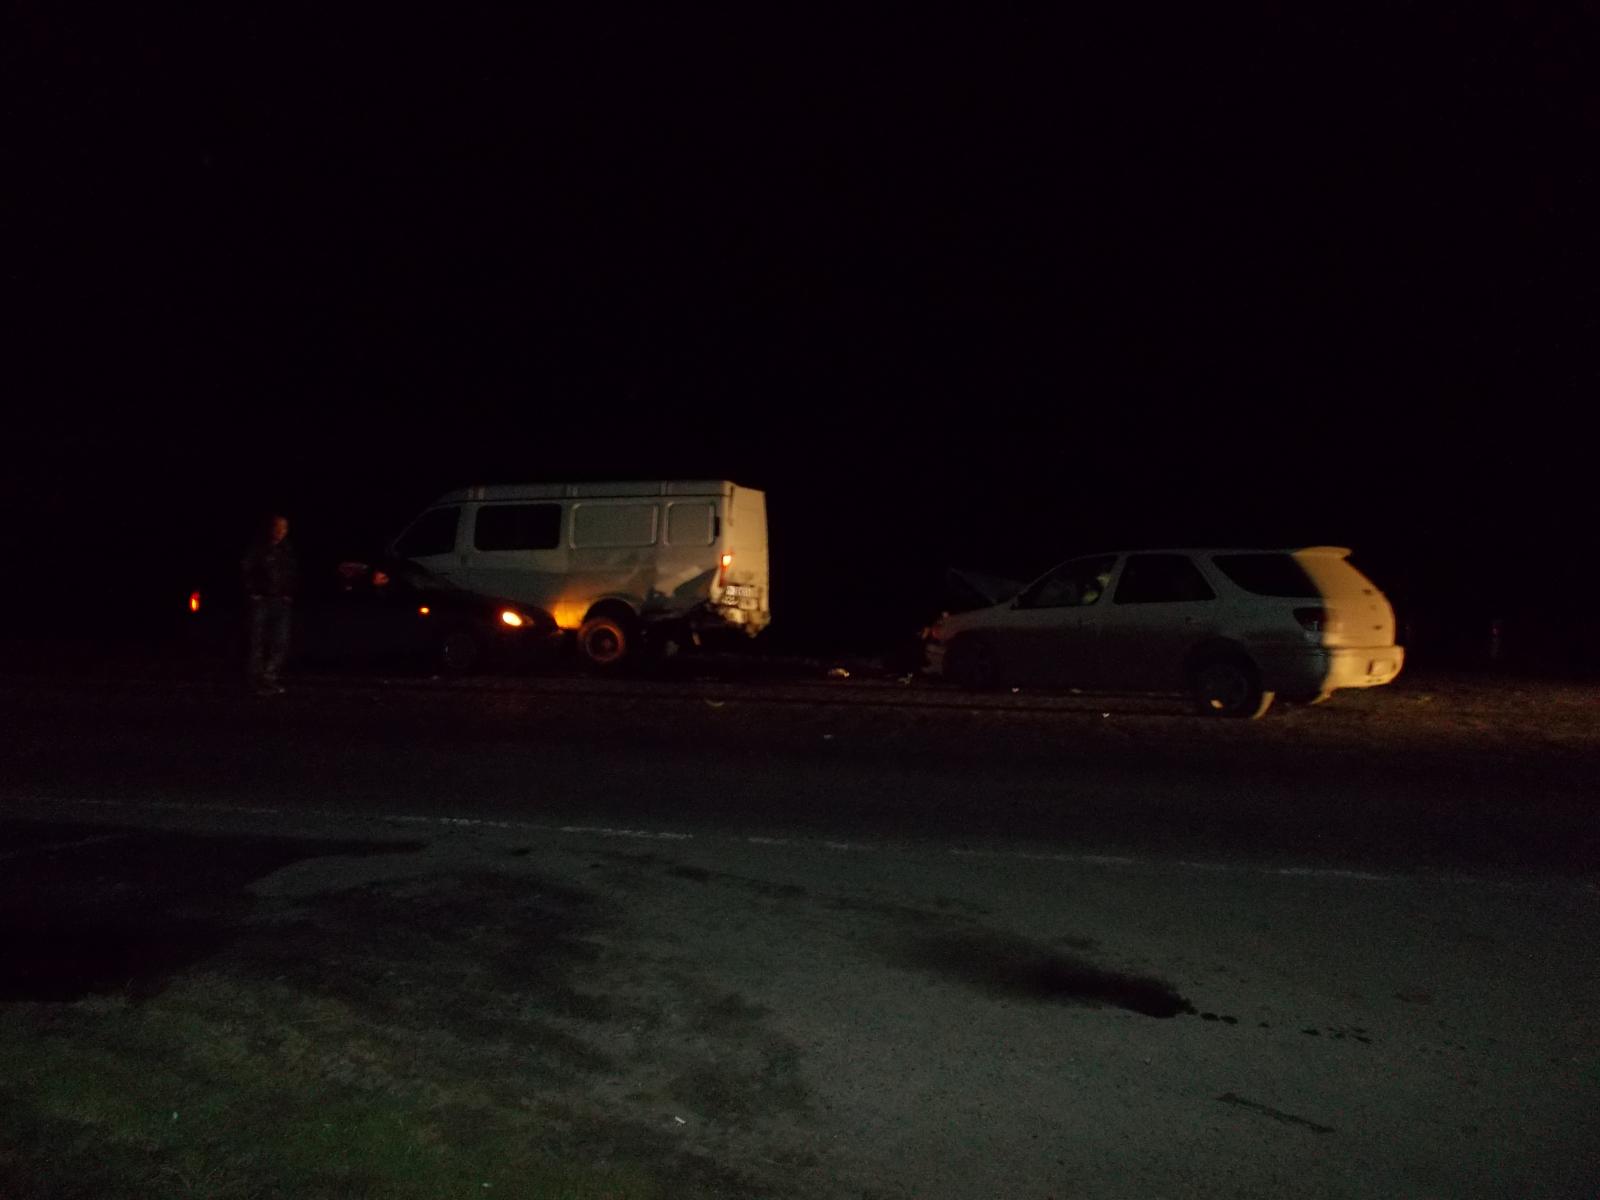 Тюменцев сбила машина, пока они ремонтировали «Газель» на трассе. ДТП рядом с Онохино 27 апреля 2016 года